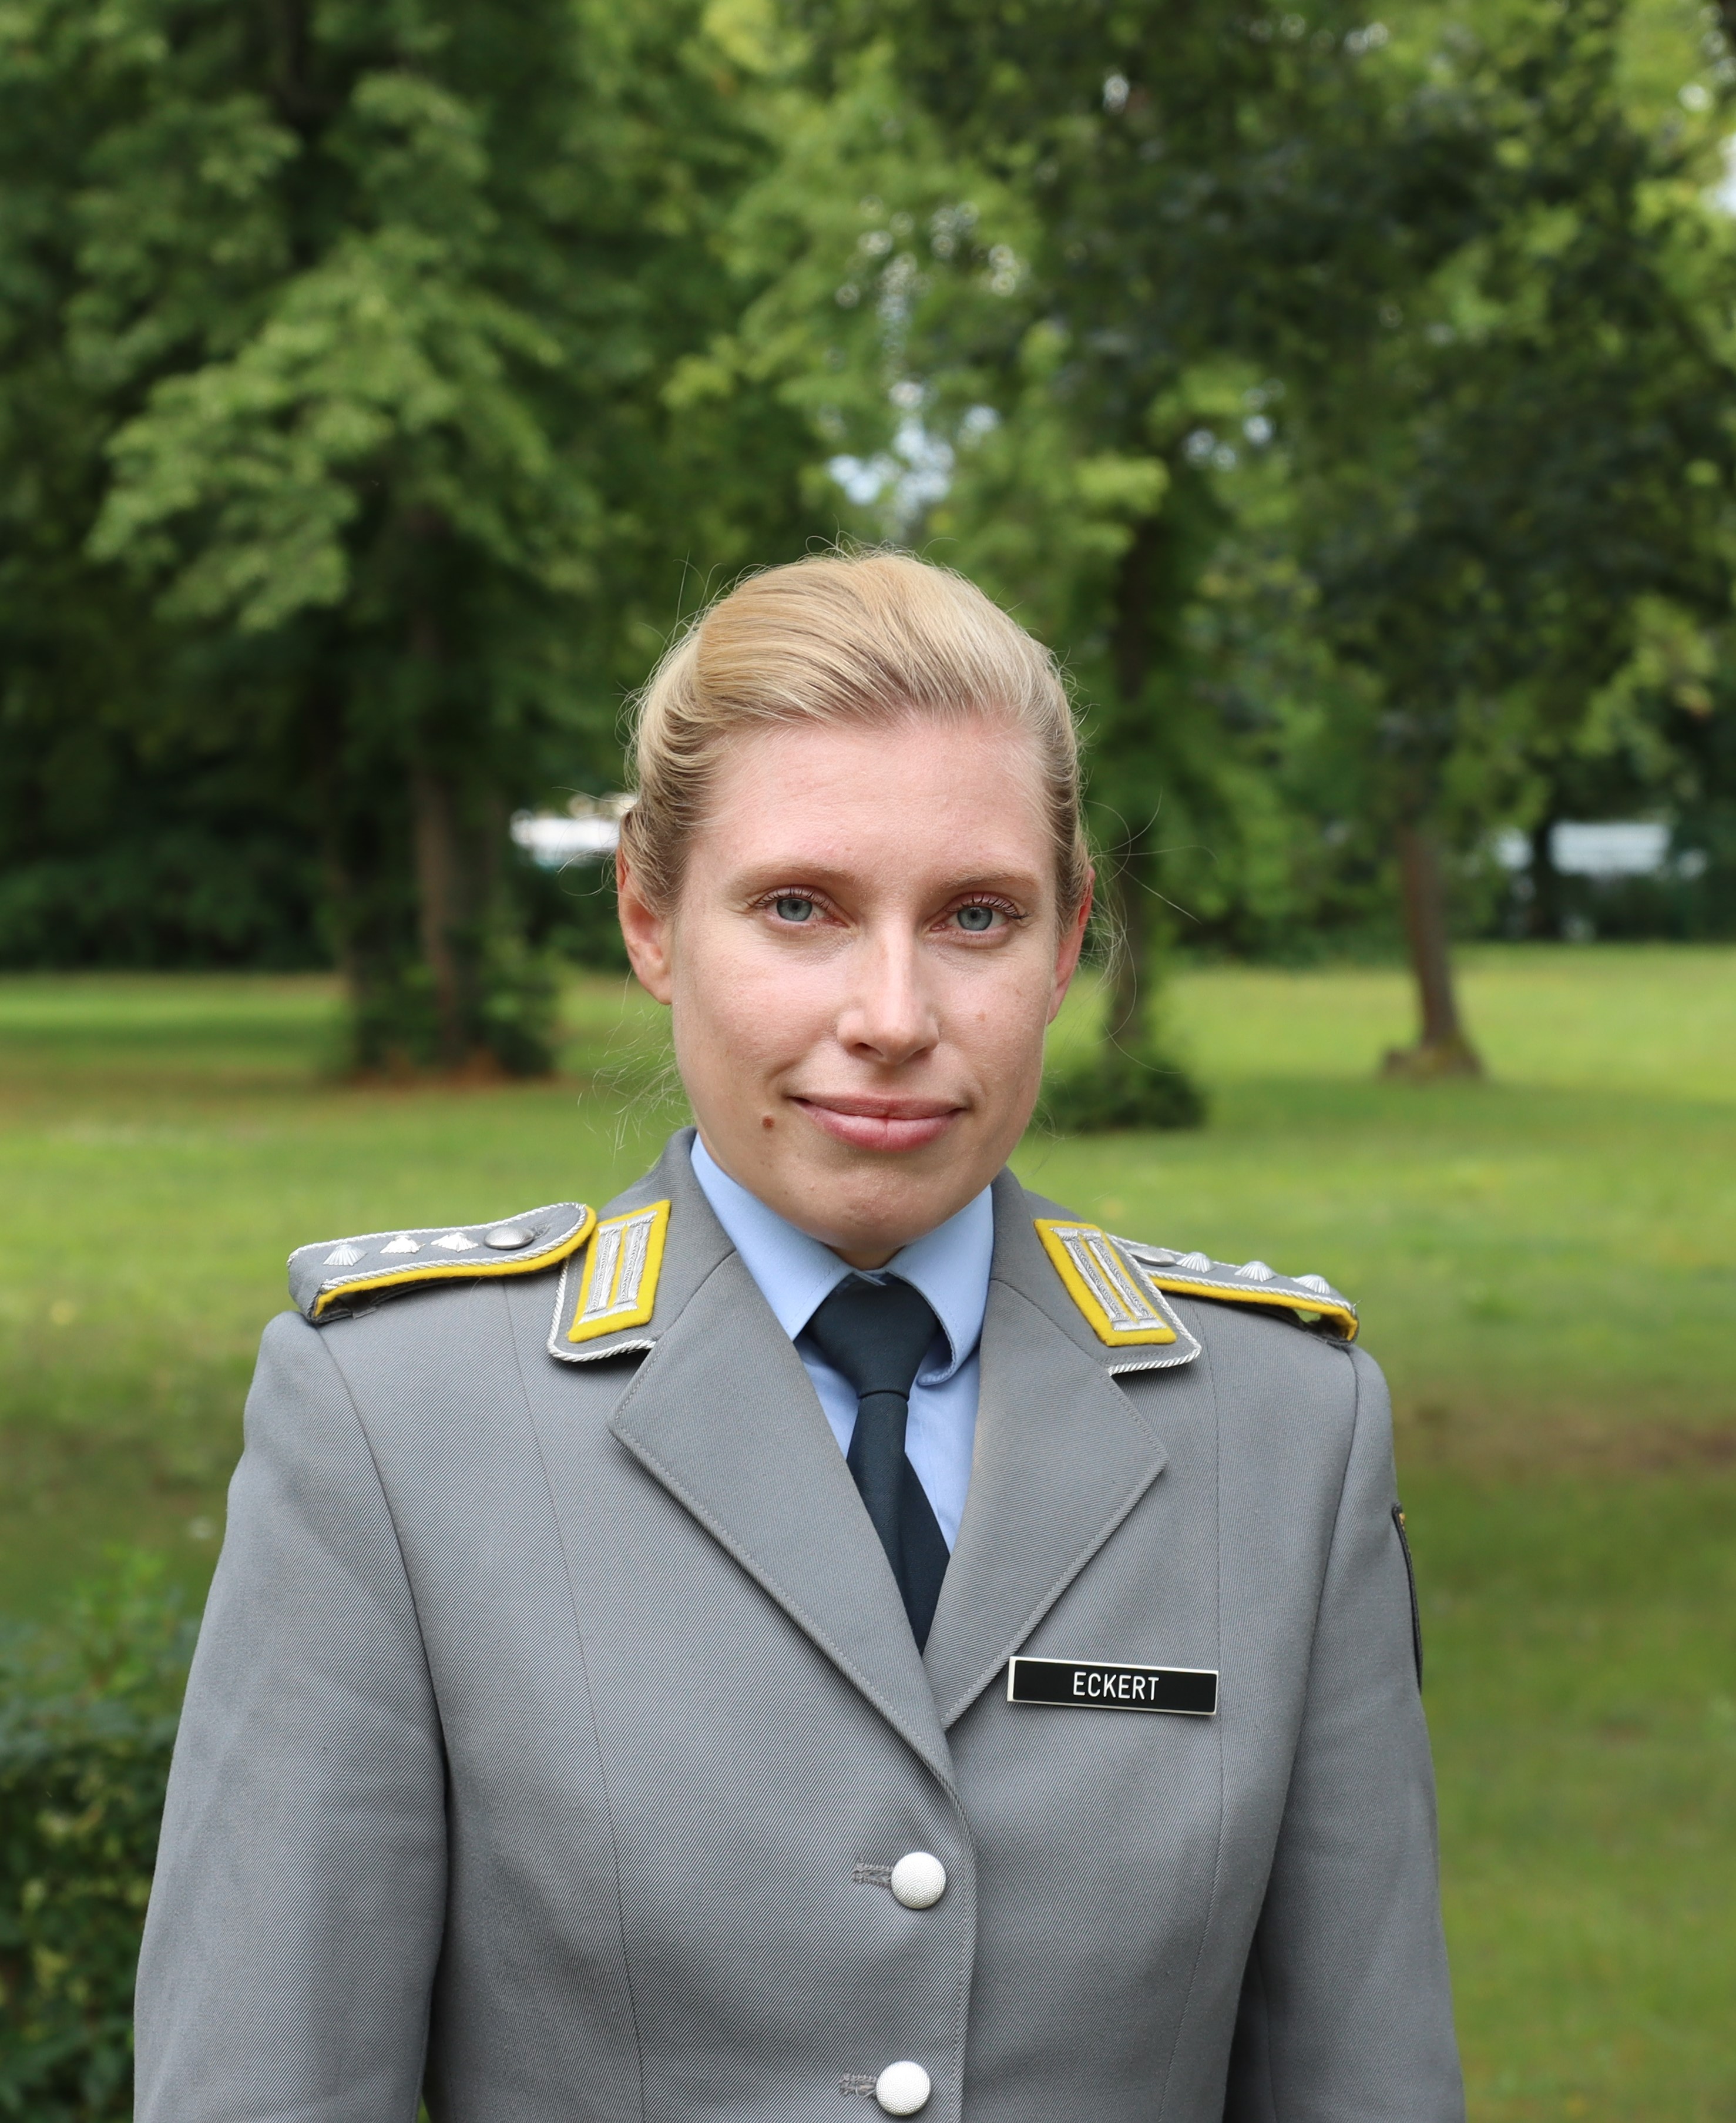 Hauptmann Luisa Eckert M.A.